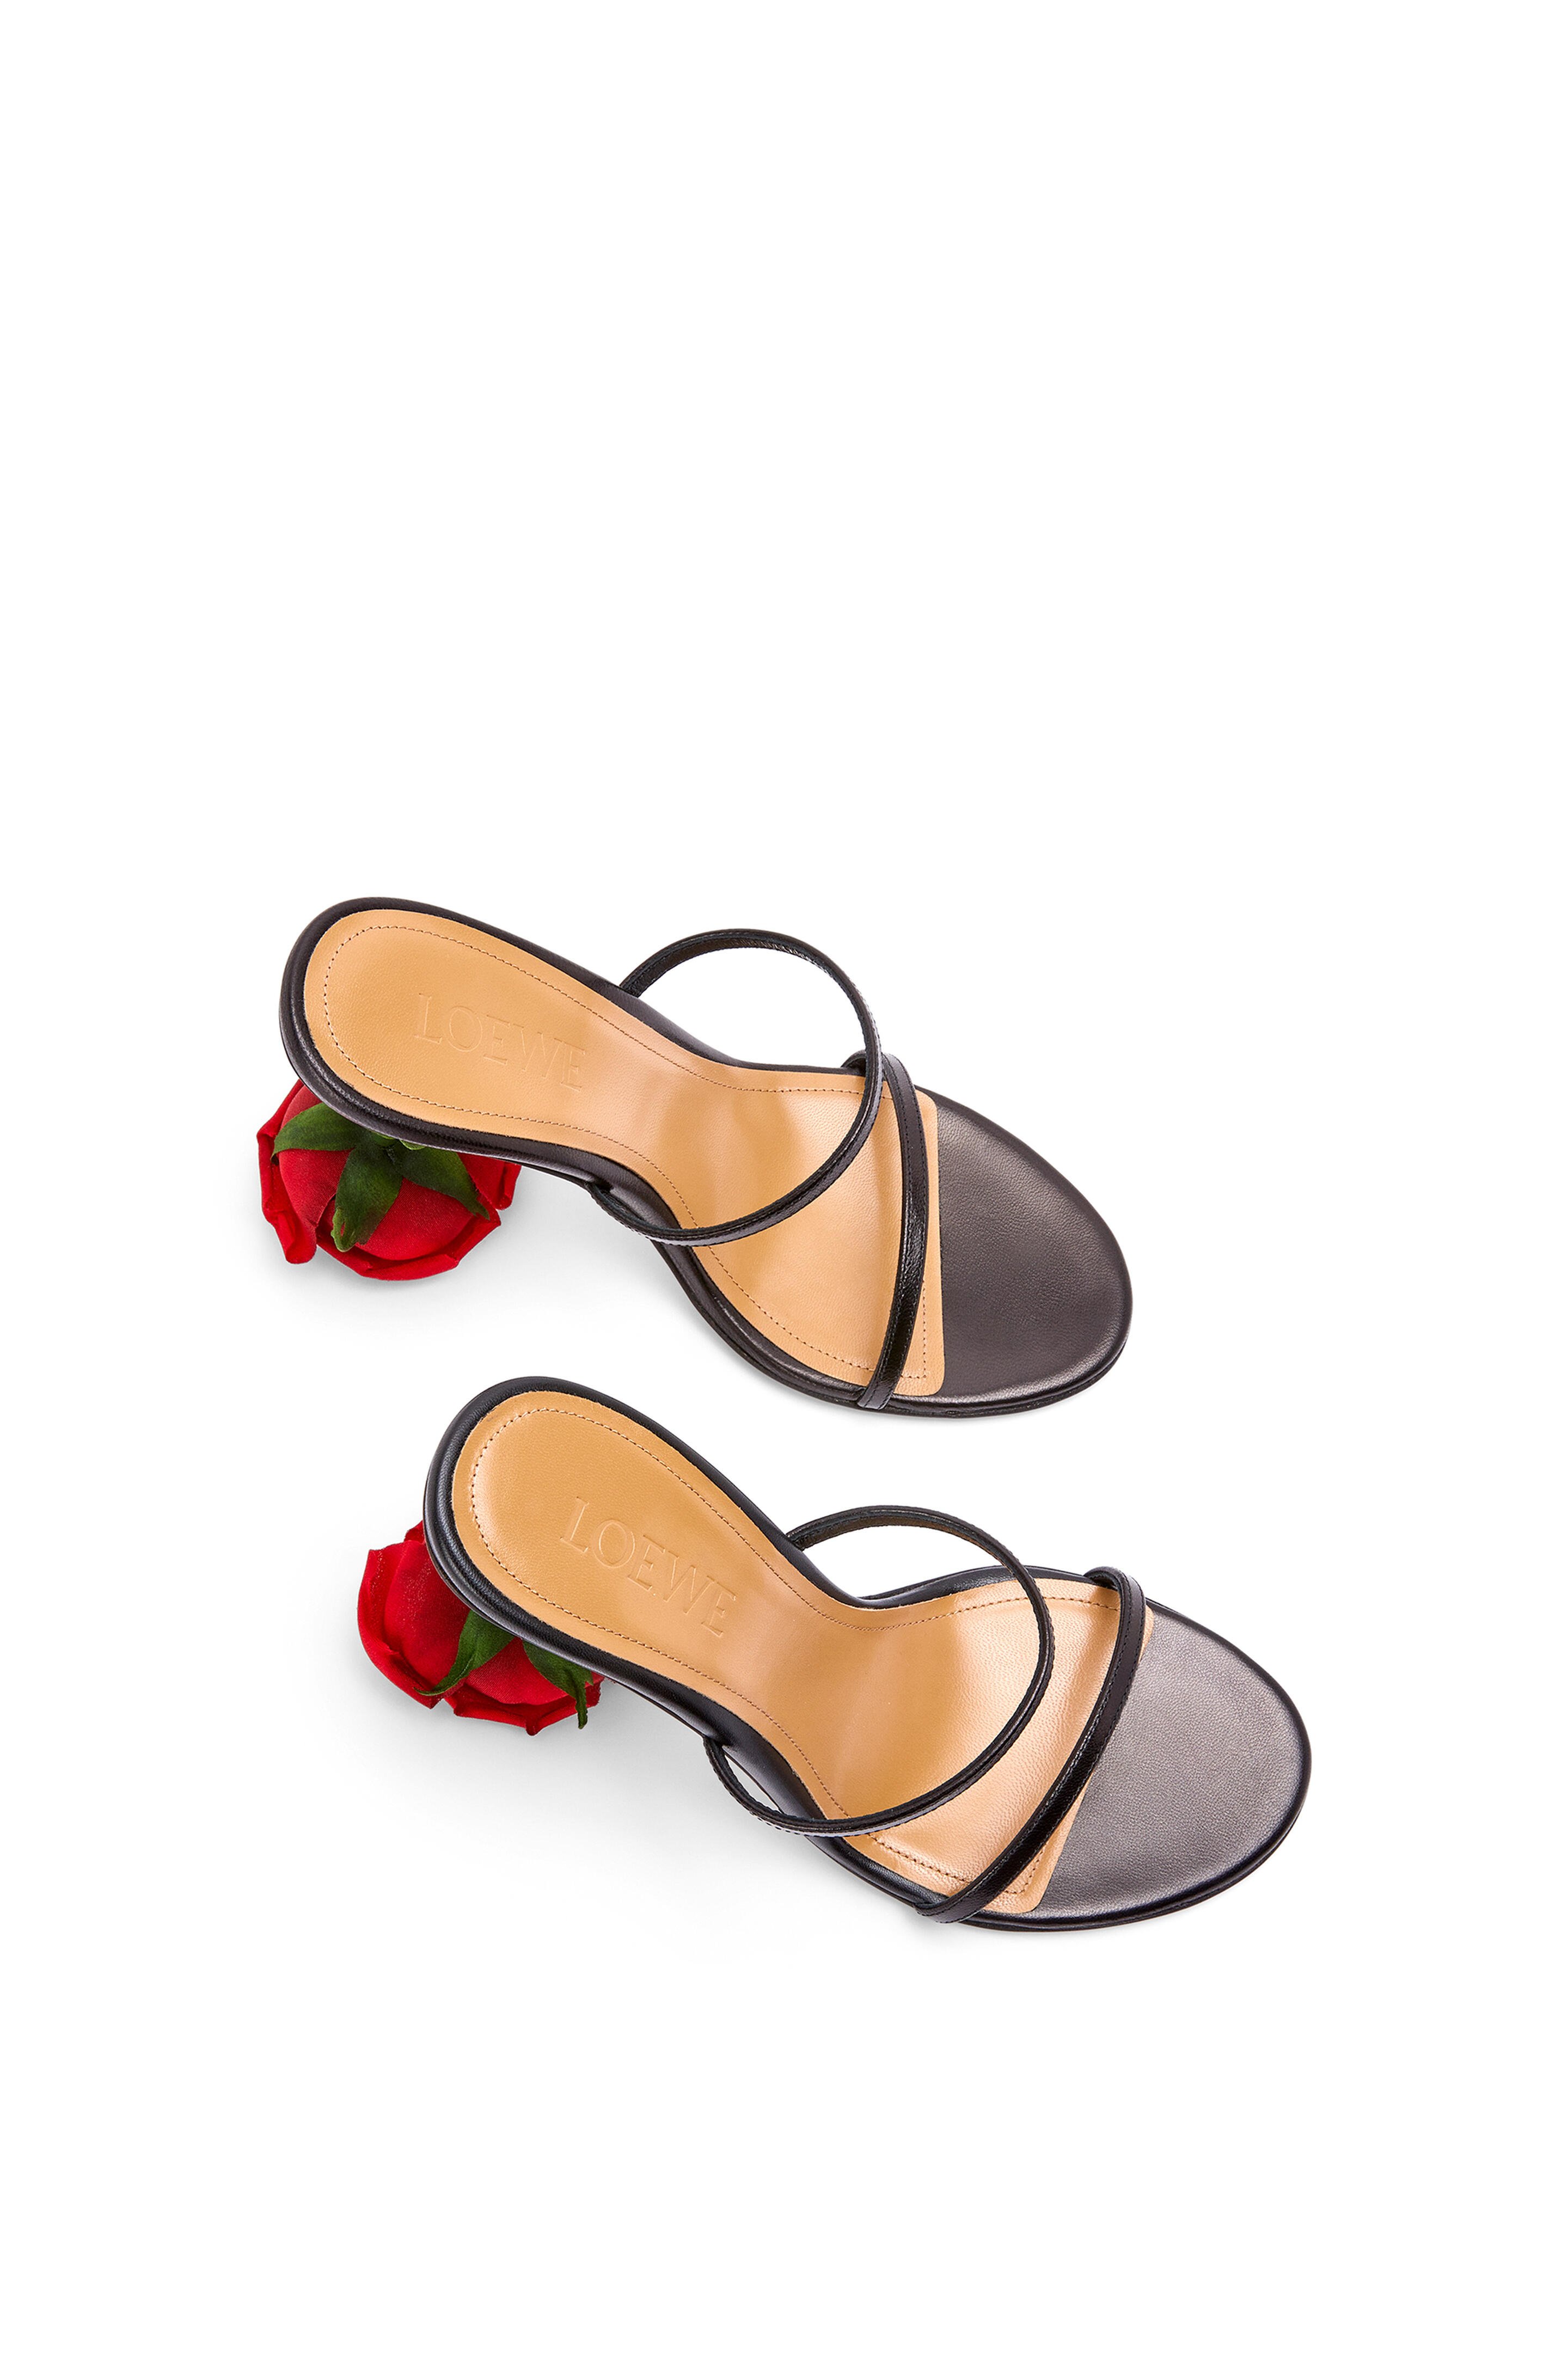 В интернет-магазине Loewe стартовали продажи босоножек с каблуком в форме розы (фото 2)